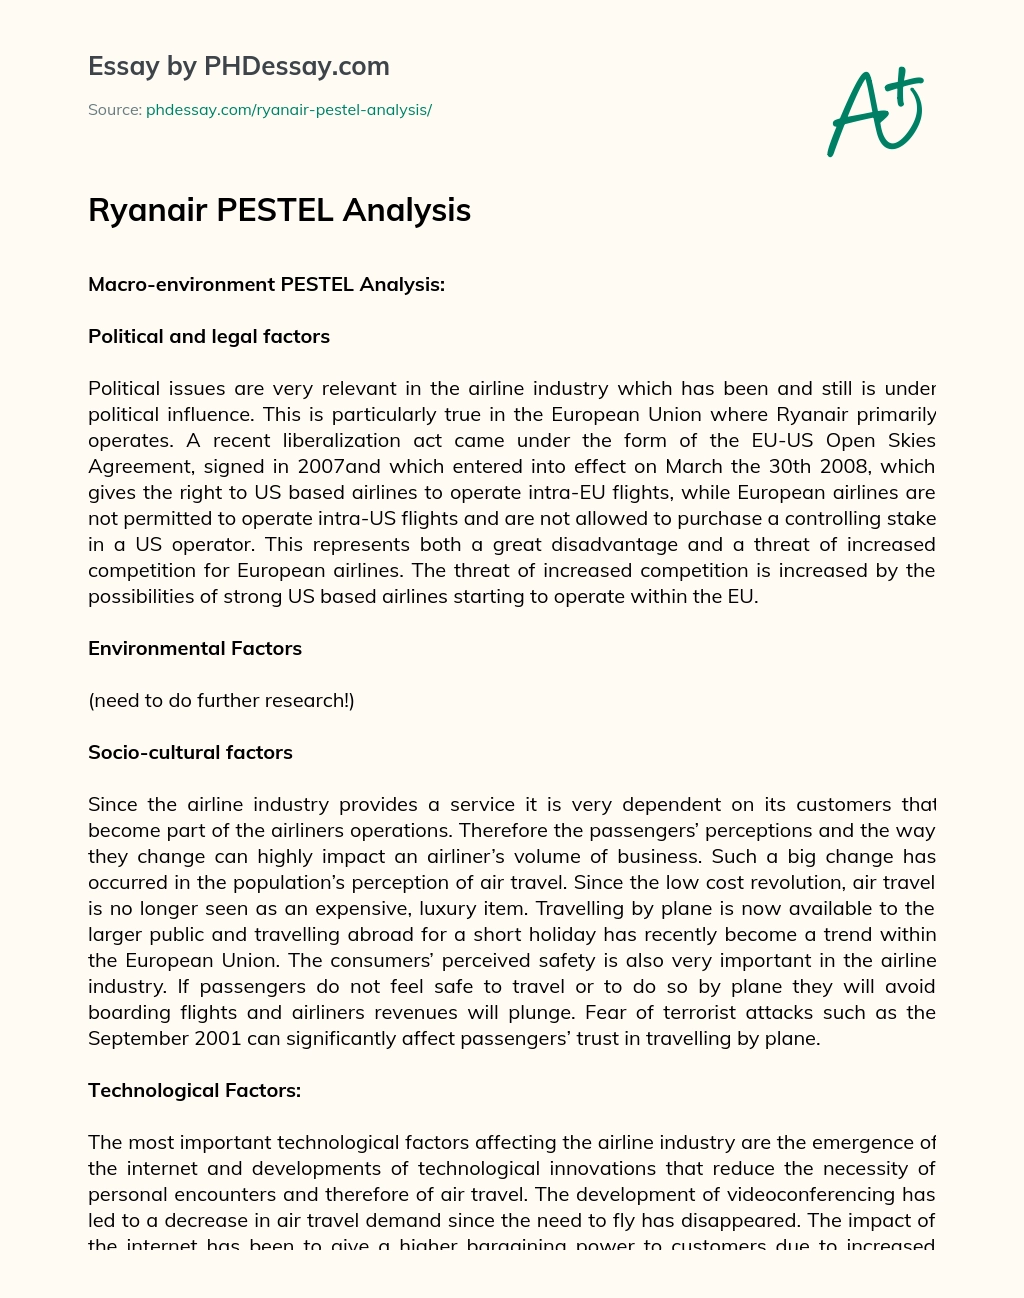 Ryanair PESTEL Analysis essay